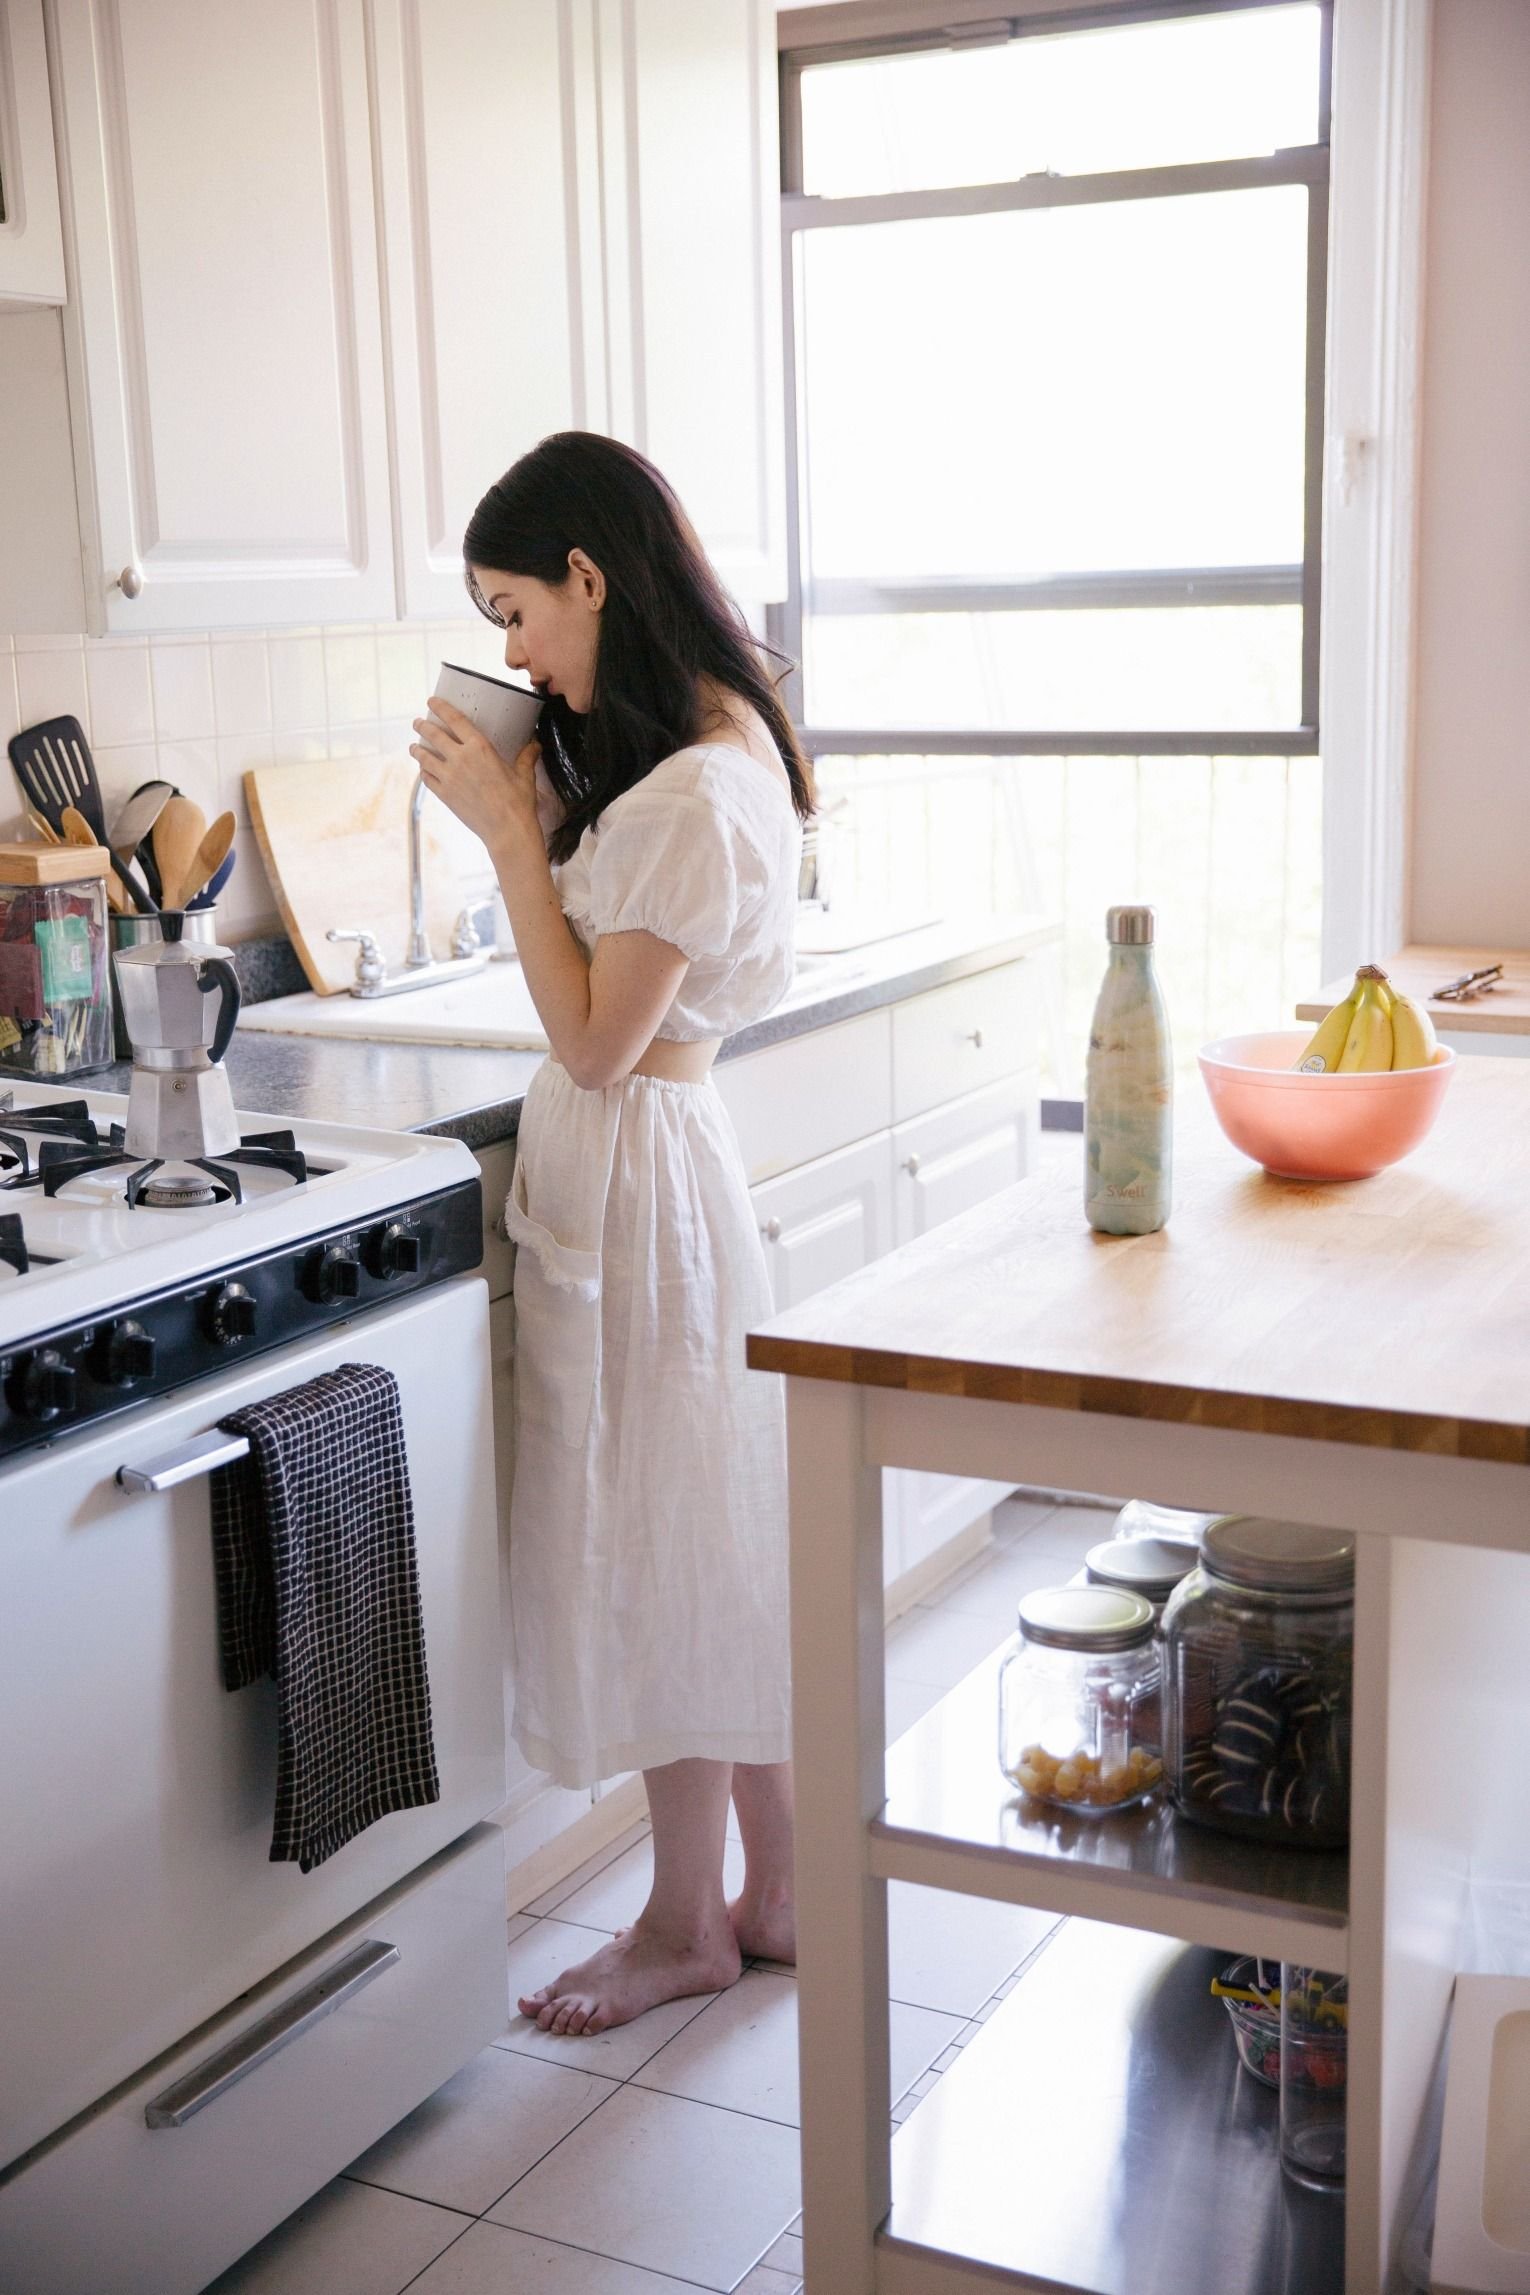 Мама в халате на кухне. Девушка на кухне. Девушка утром на кухне. Фотосессия на кухне девушка. Девушка готовит.